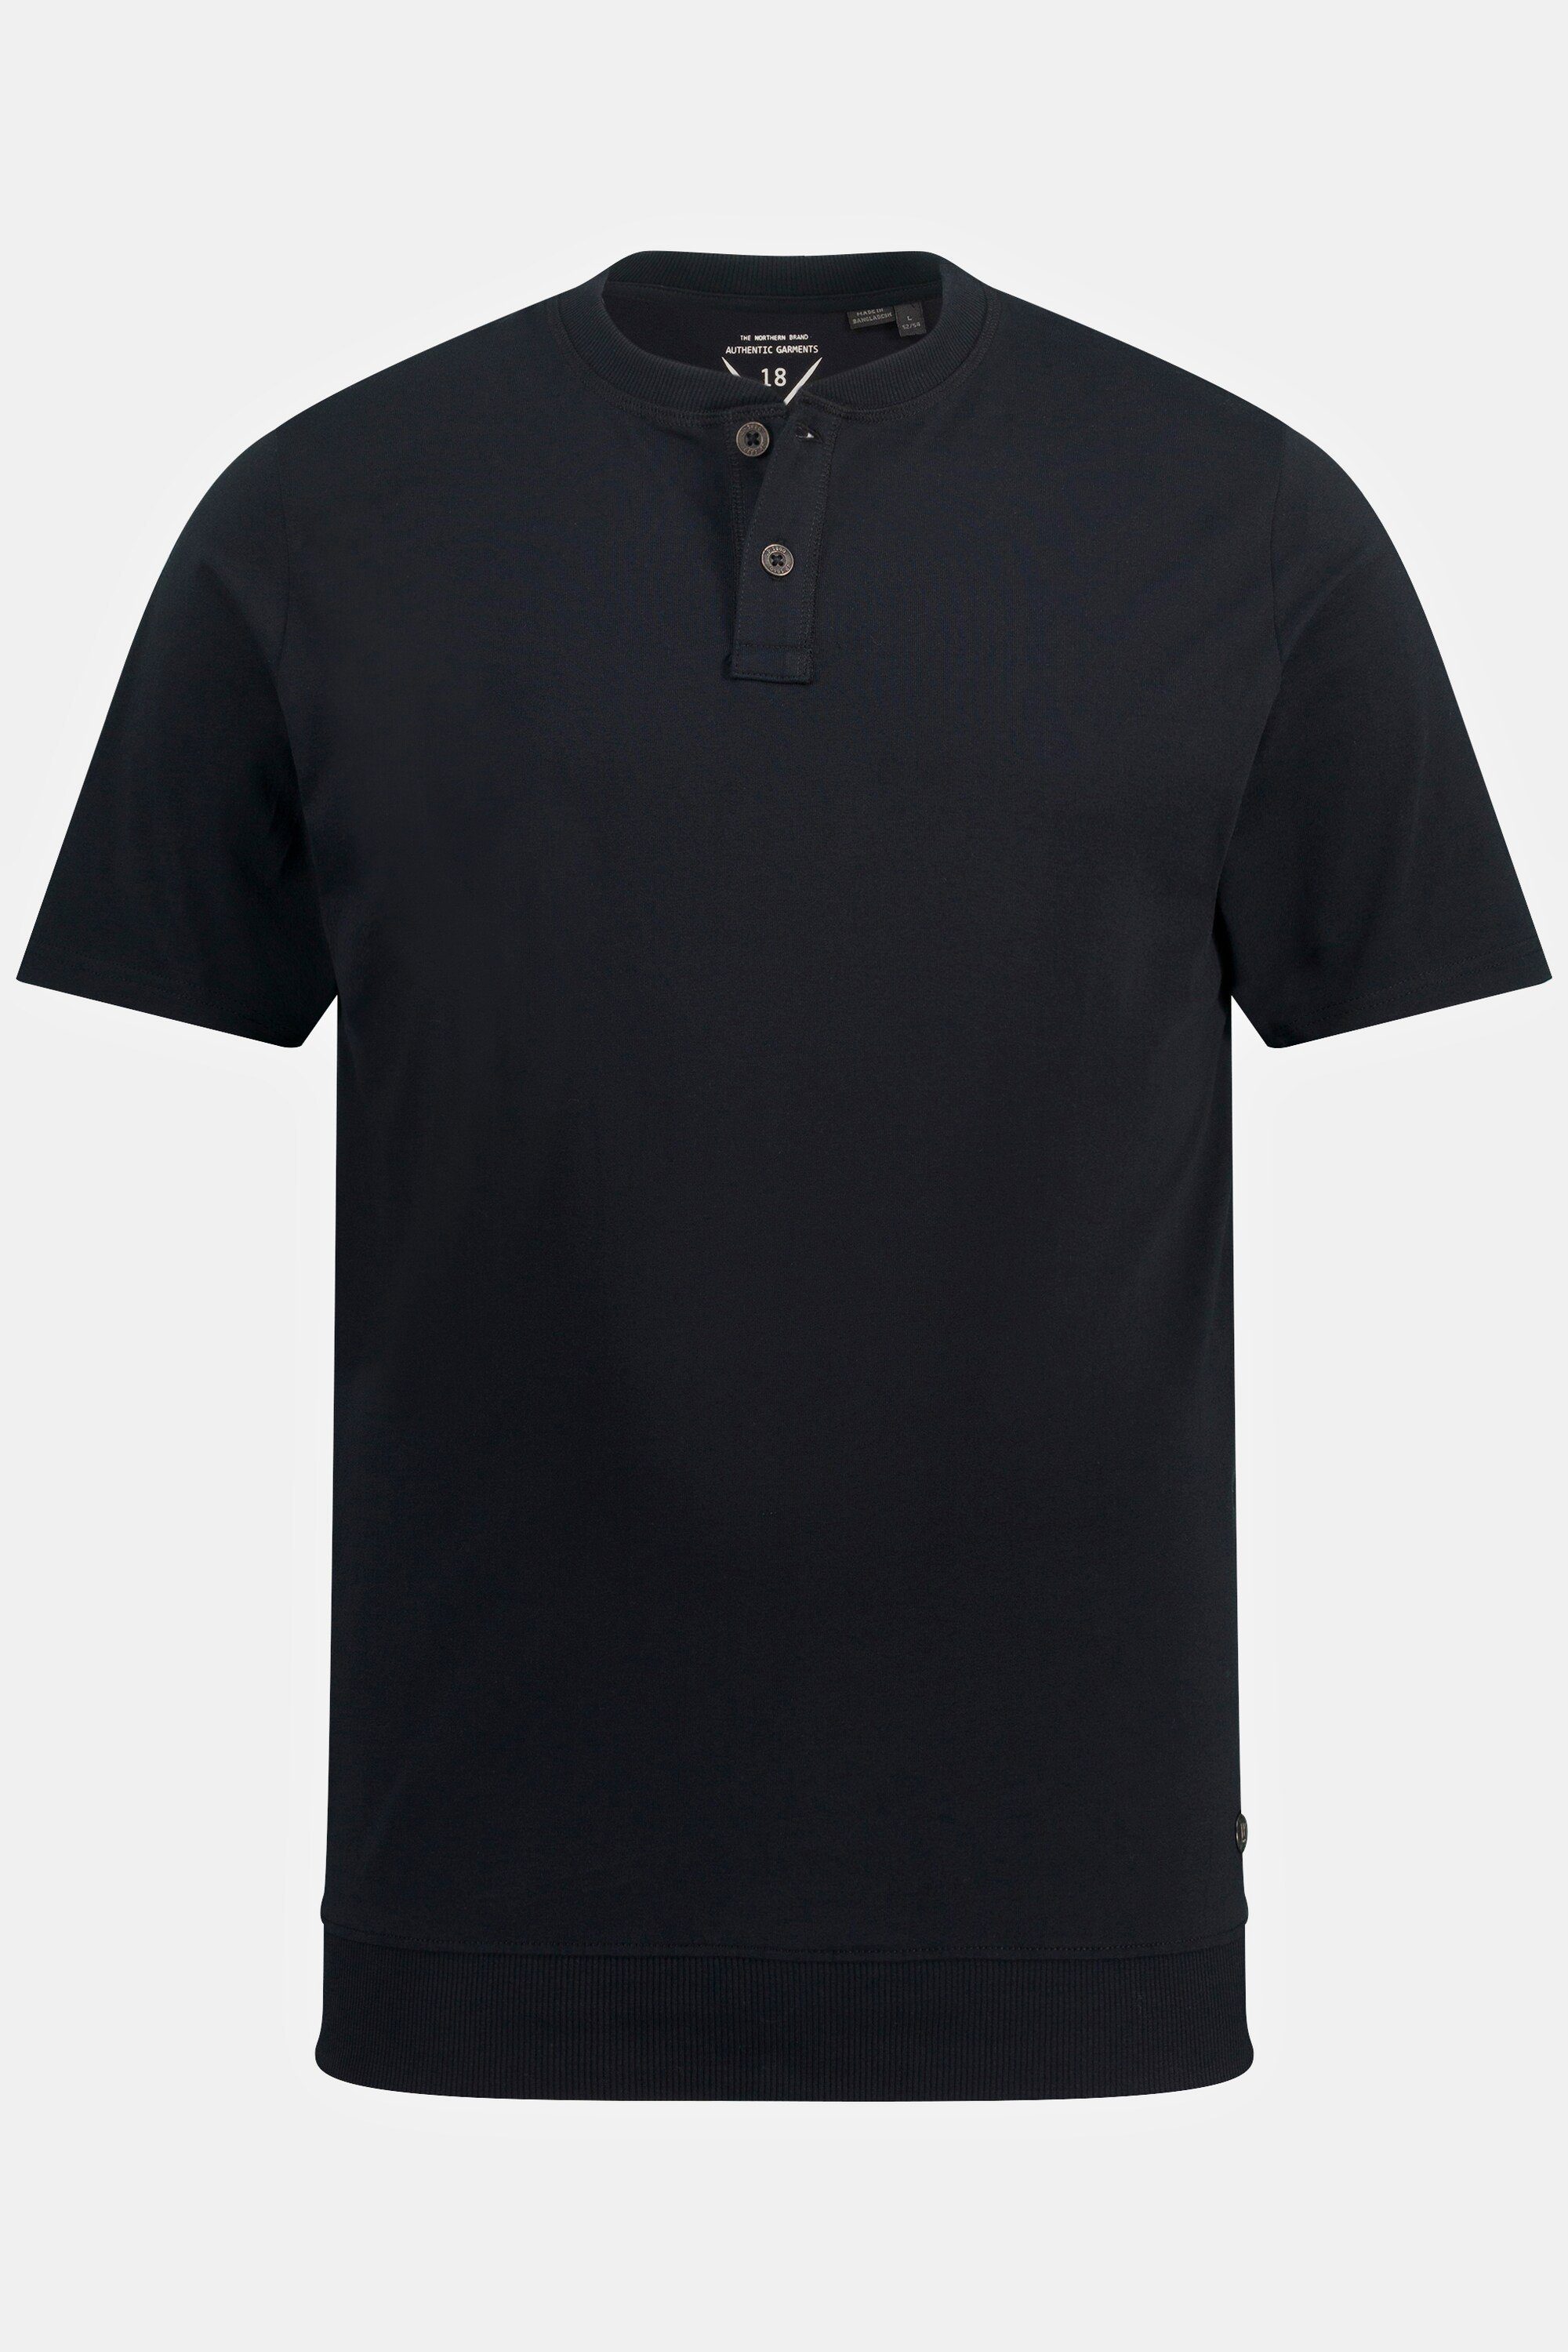 bis Rundhals Halbarm Bauchfit XL 8 schwarz T-Shirt JP1880 Henley